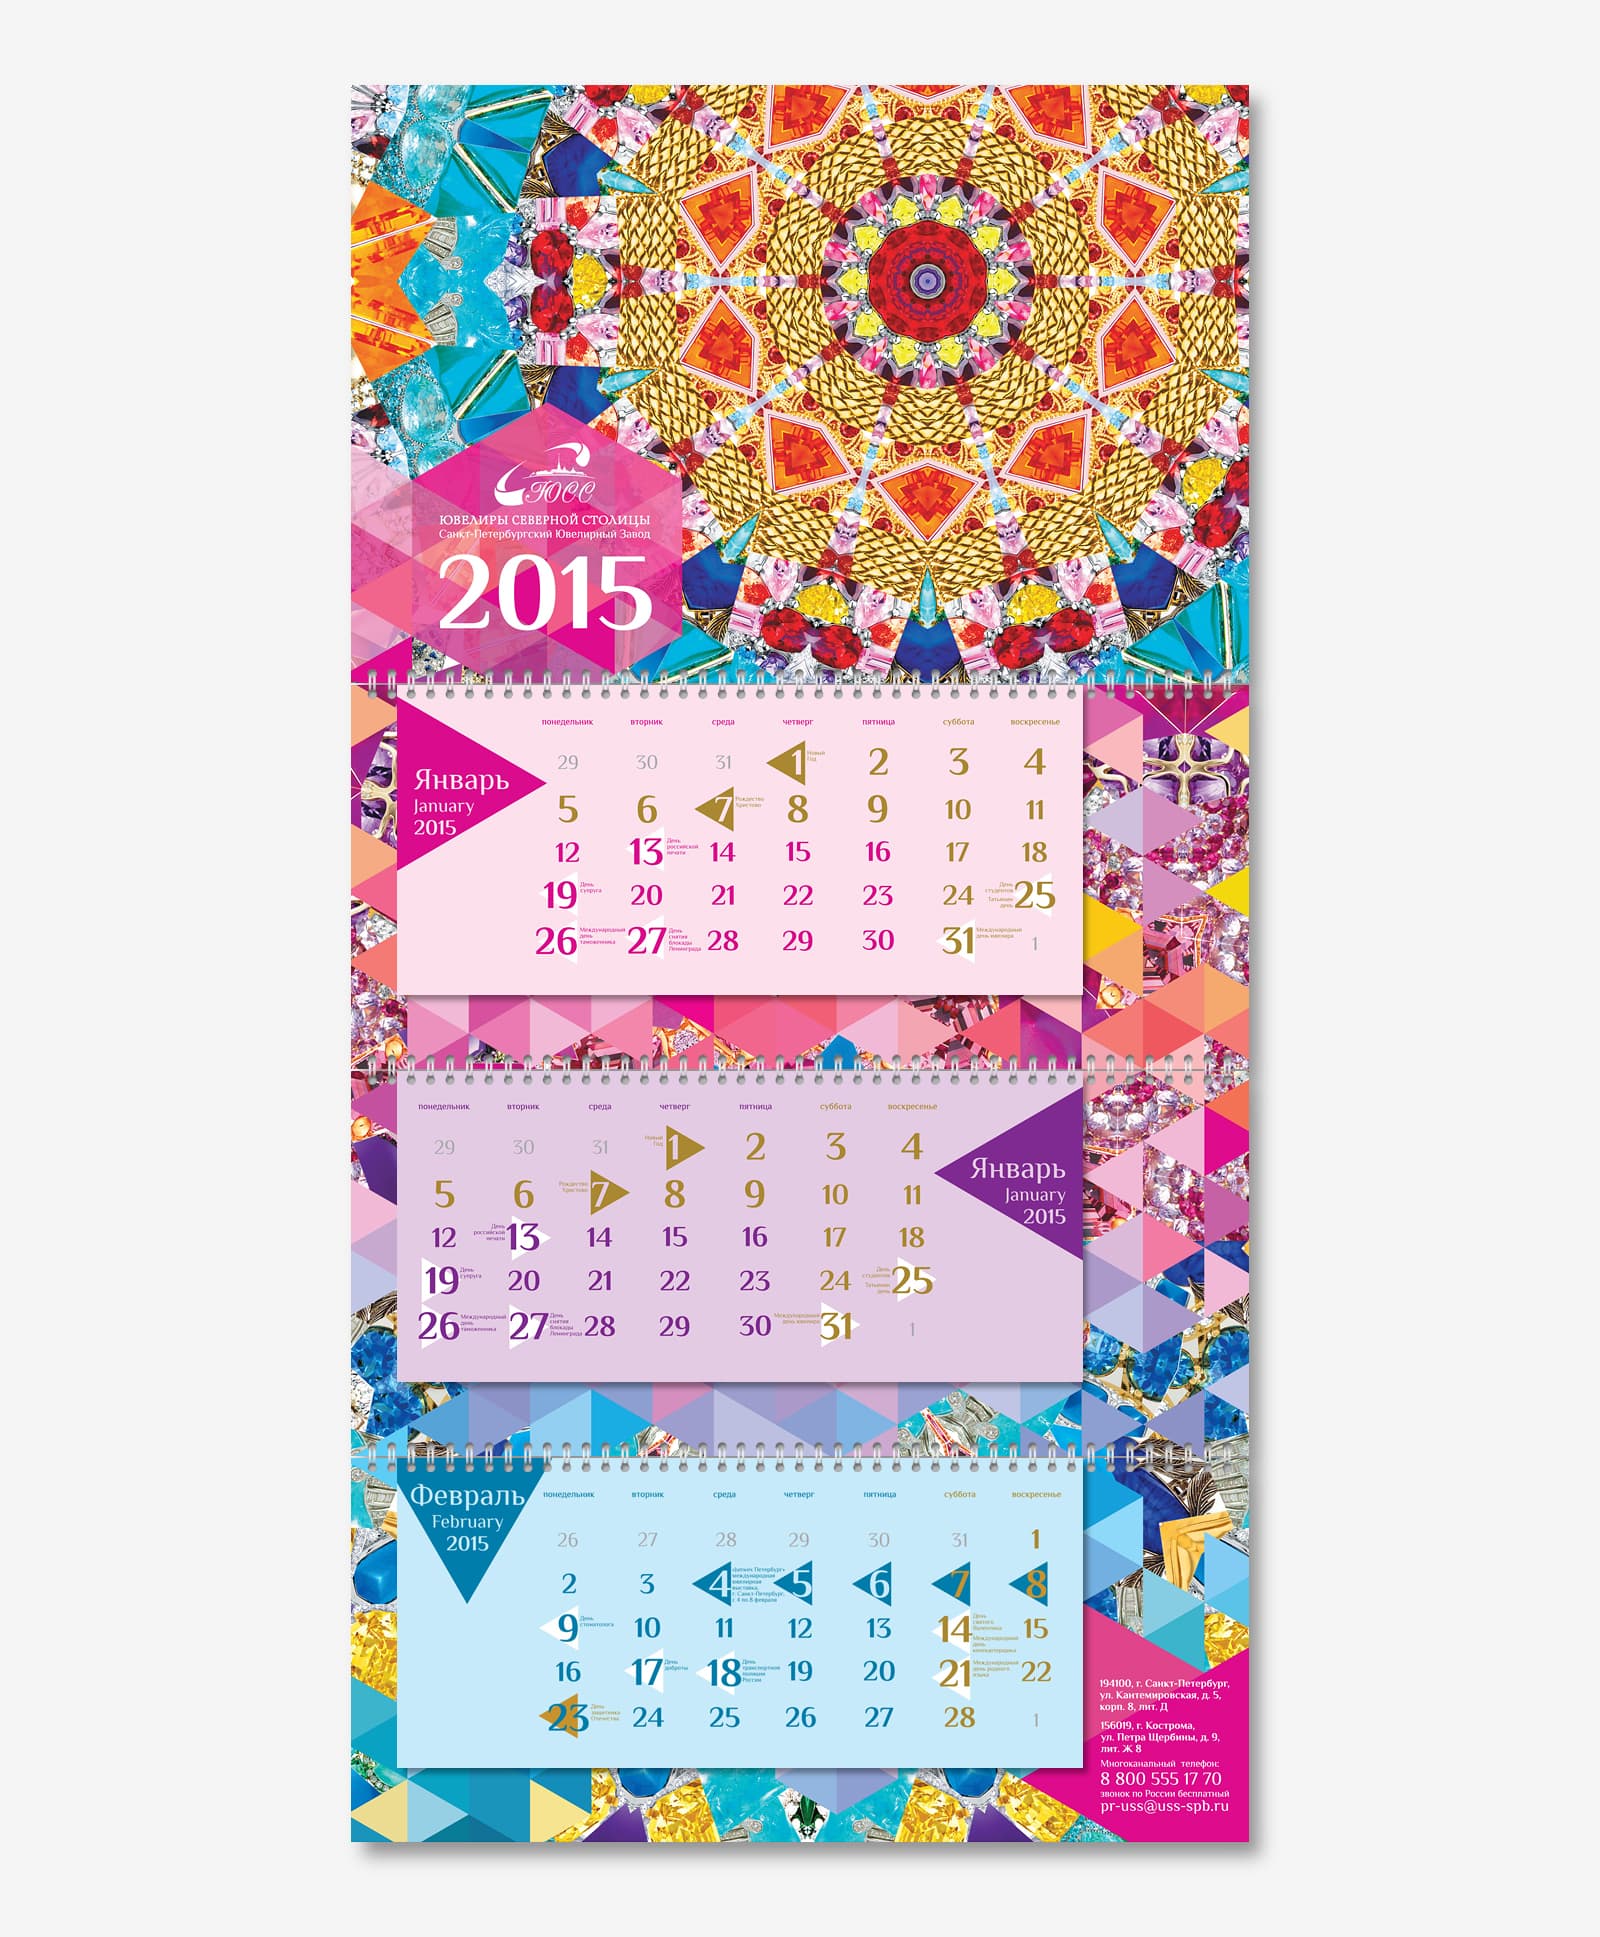 Сделали дизайн календаря Трио для компании «Ювелиры Северной Столицы» на 2015 год